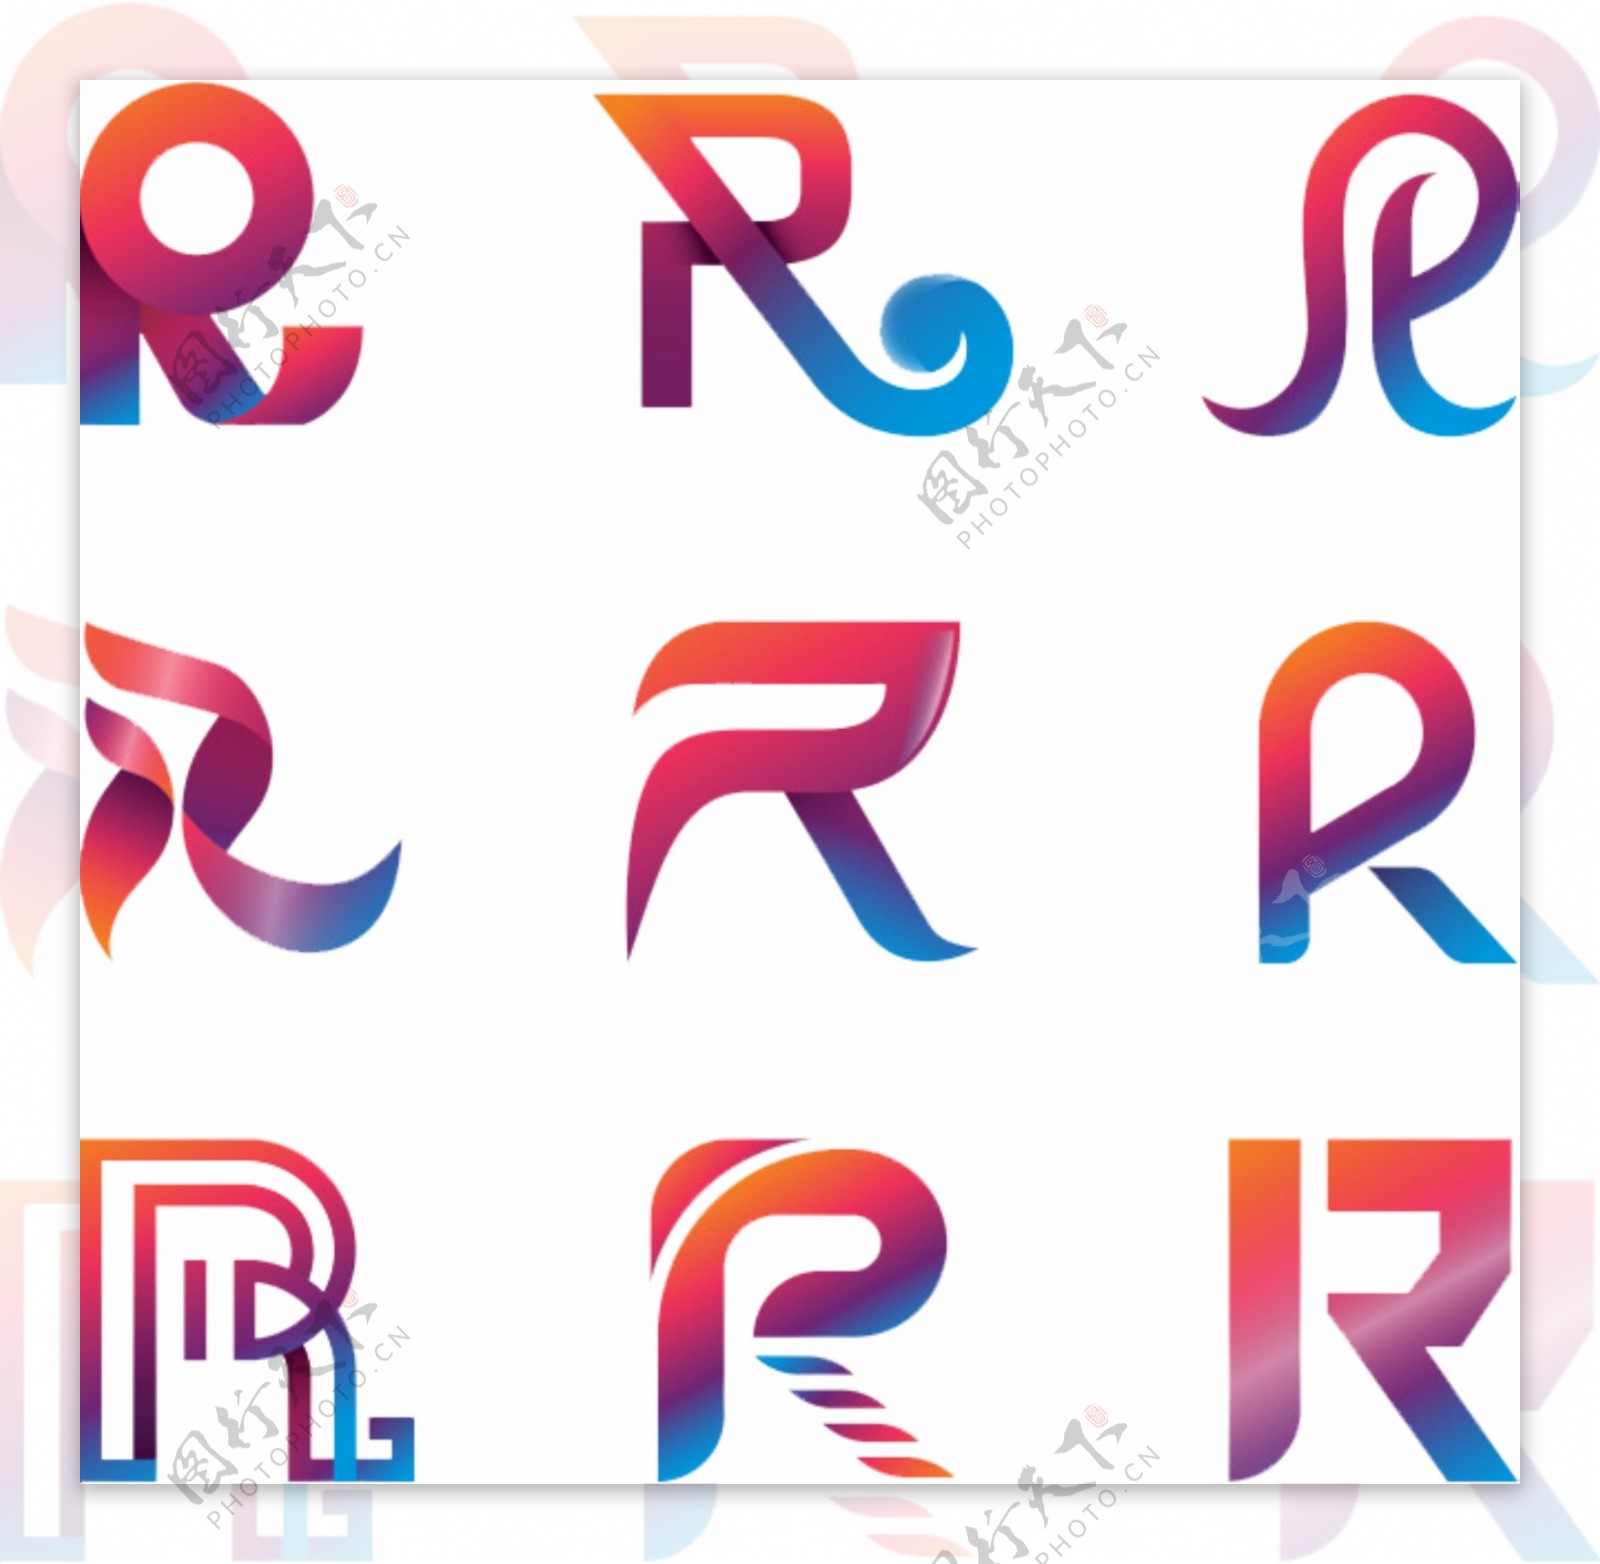 注册商标R彩色渐变字母元素艺术图标素材设计装饰集合